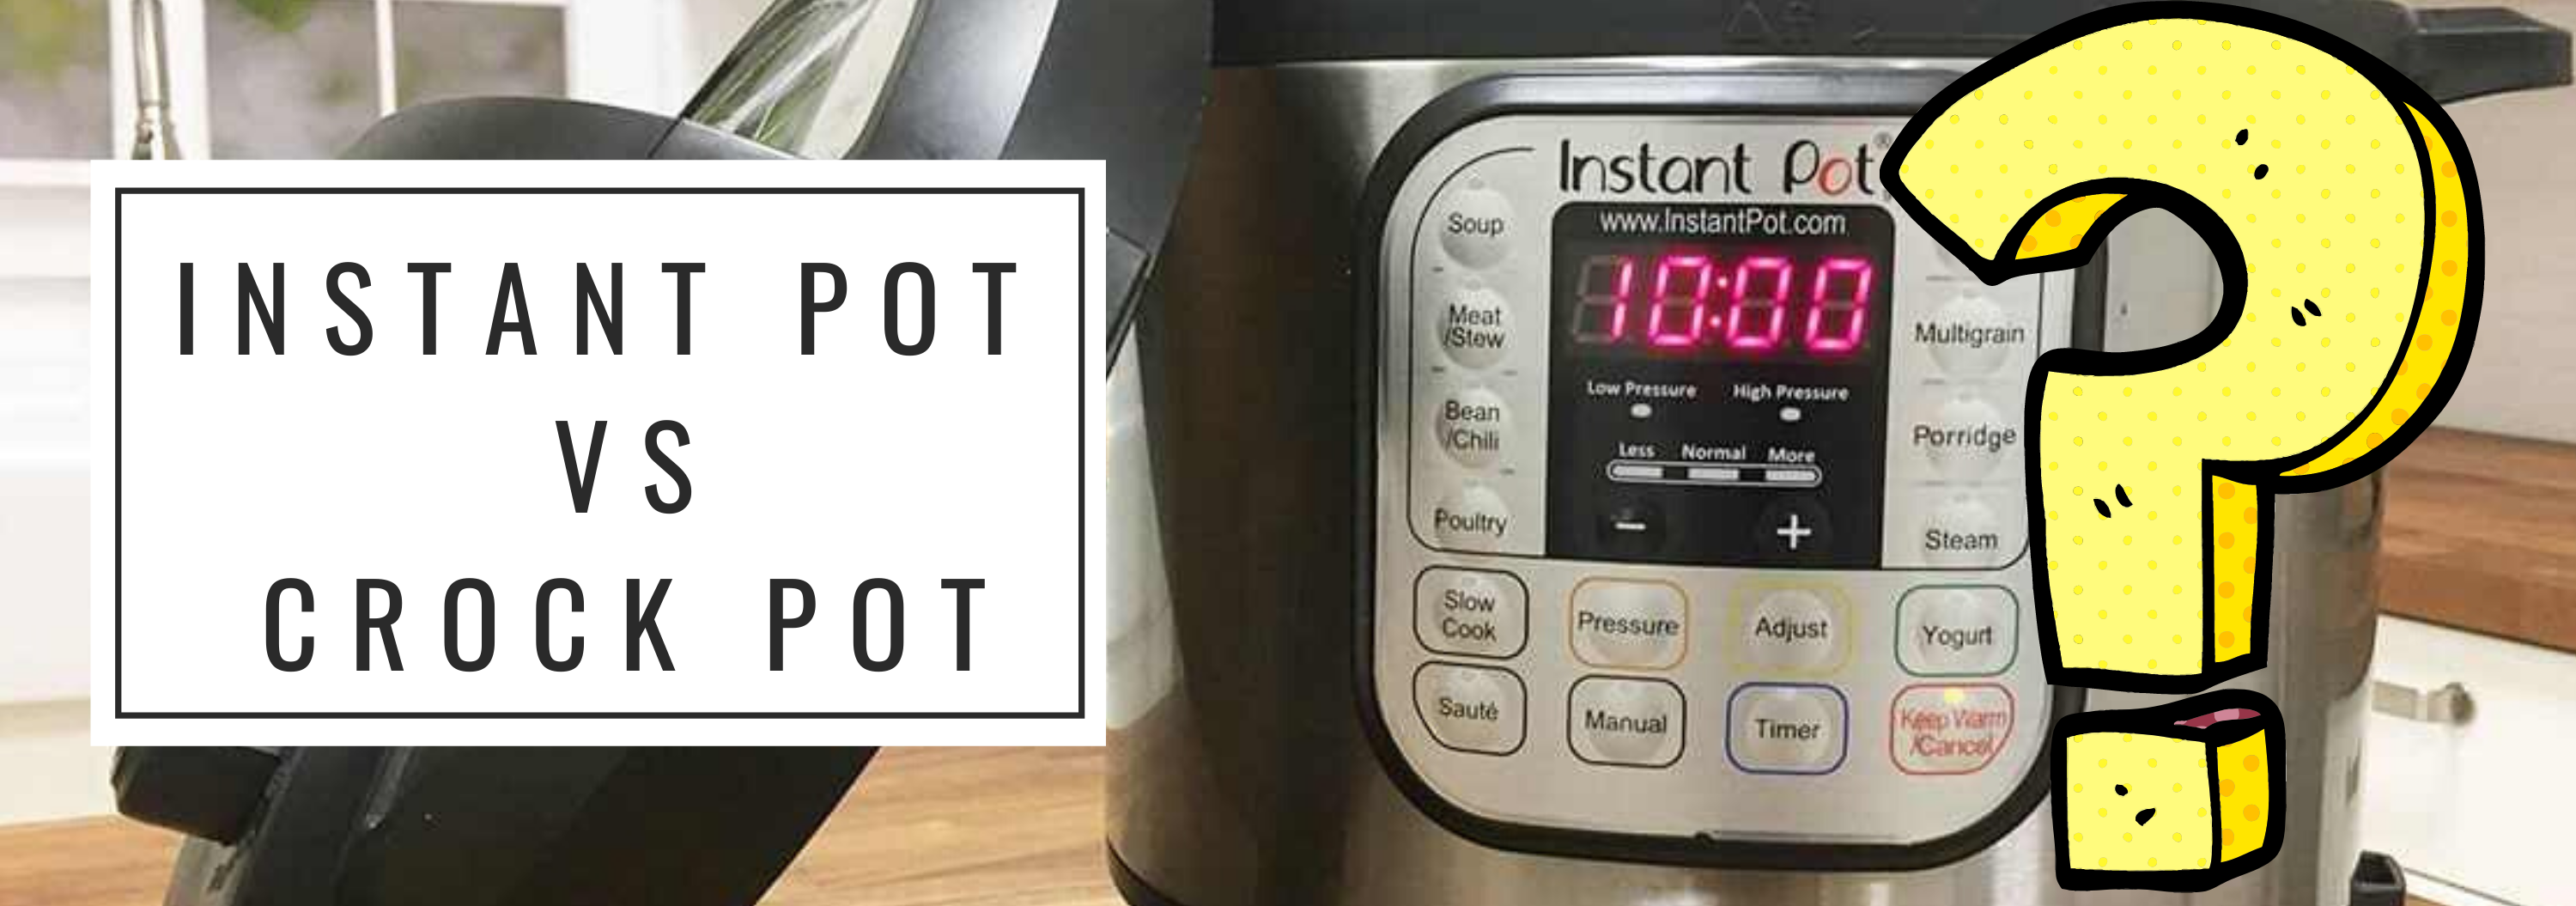 Instant Pot vs Crock Pot